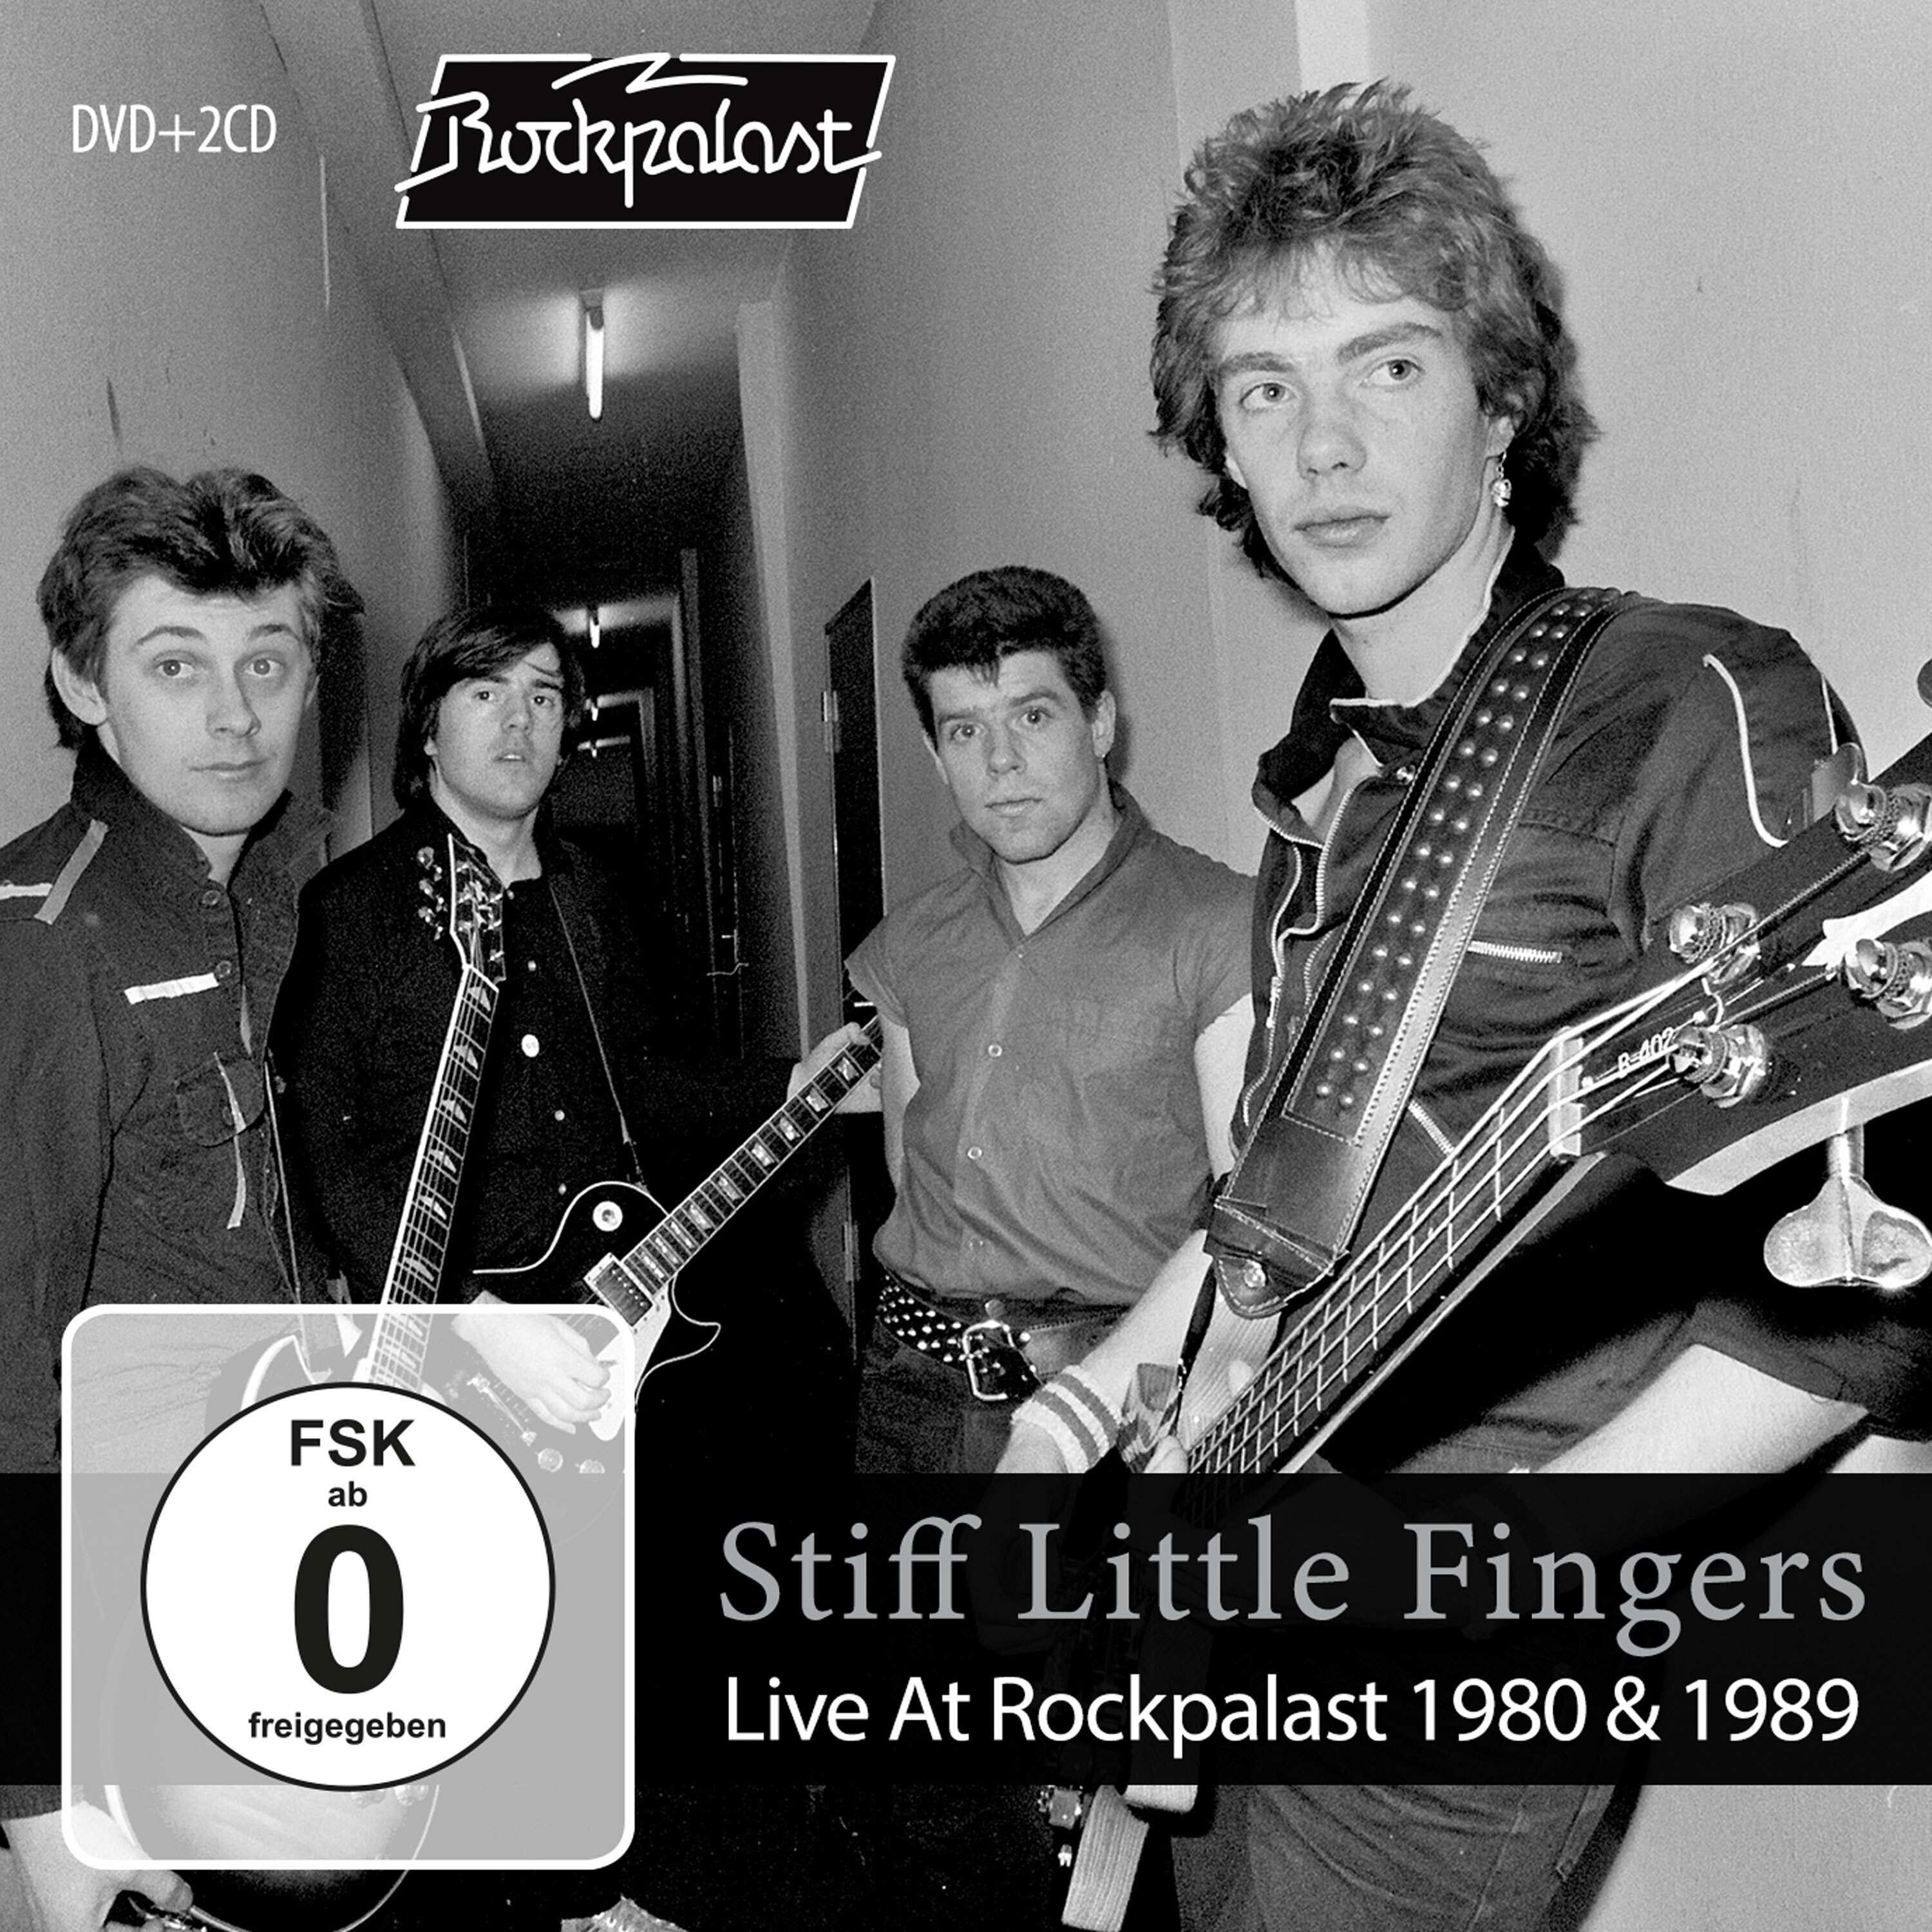 stiff little fingers tour 1980